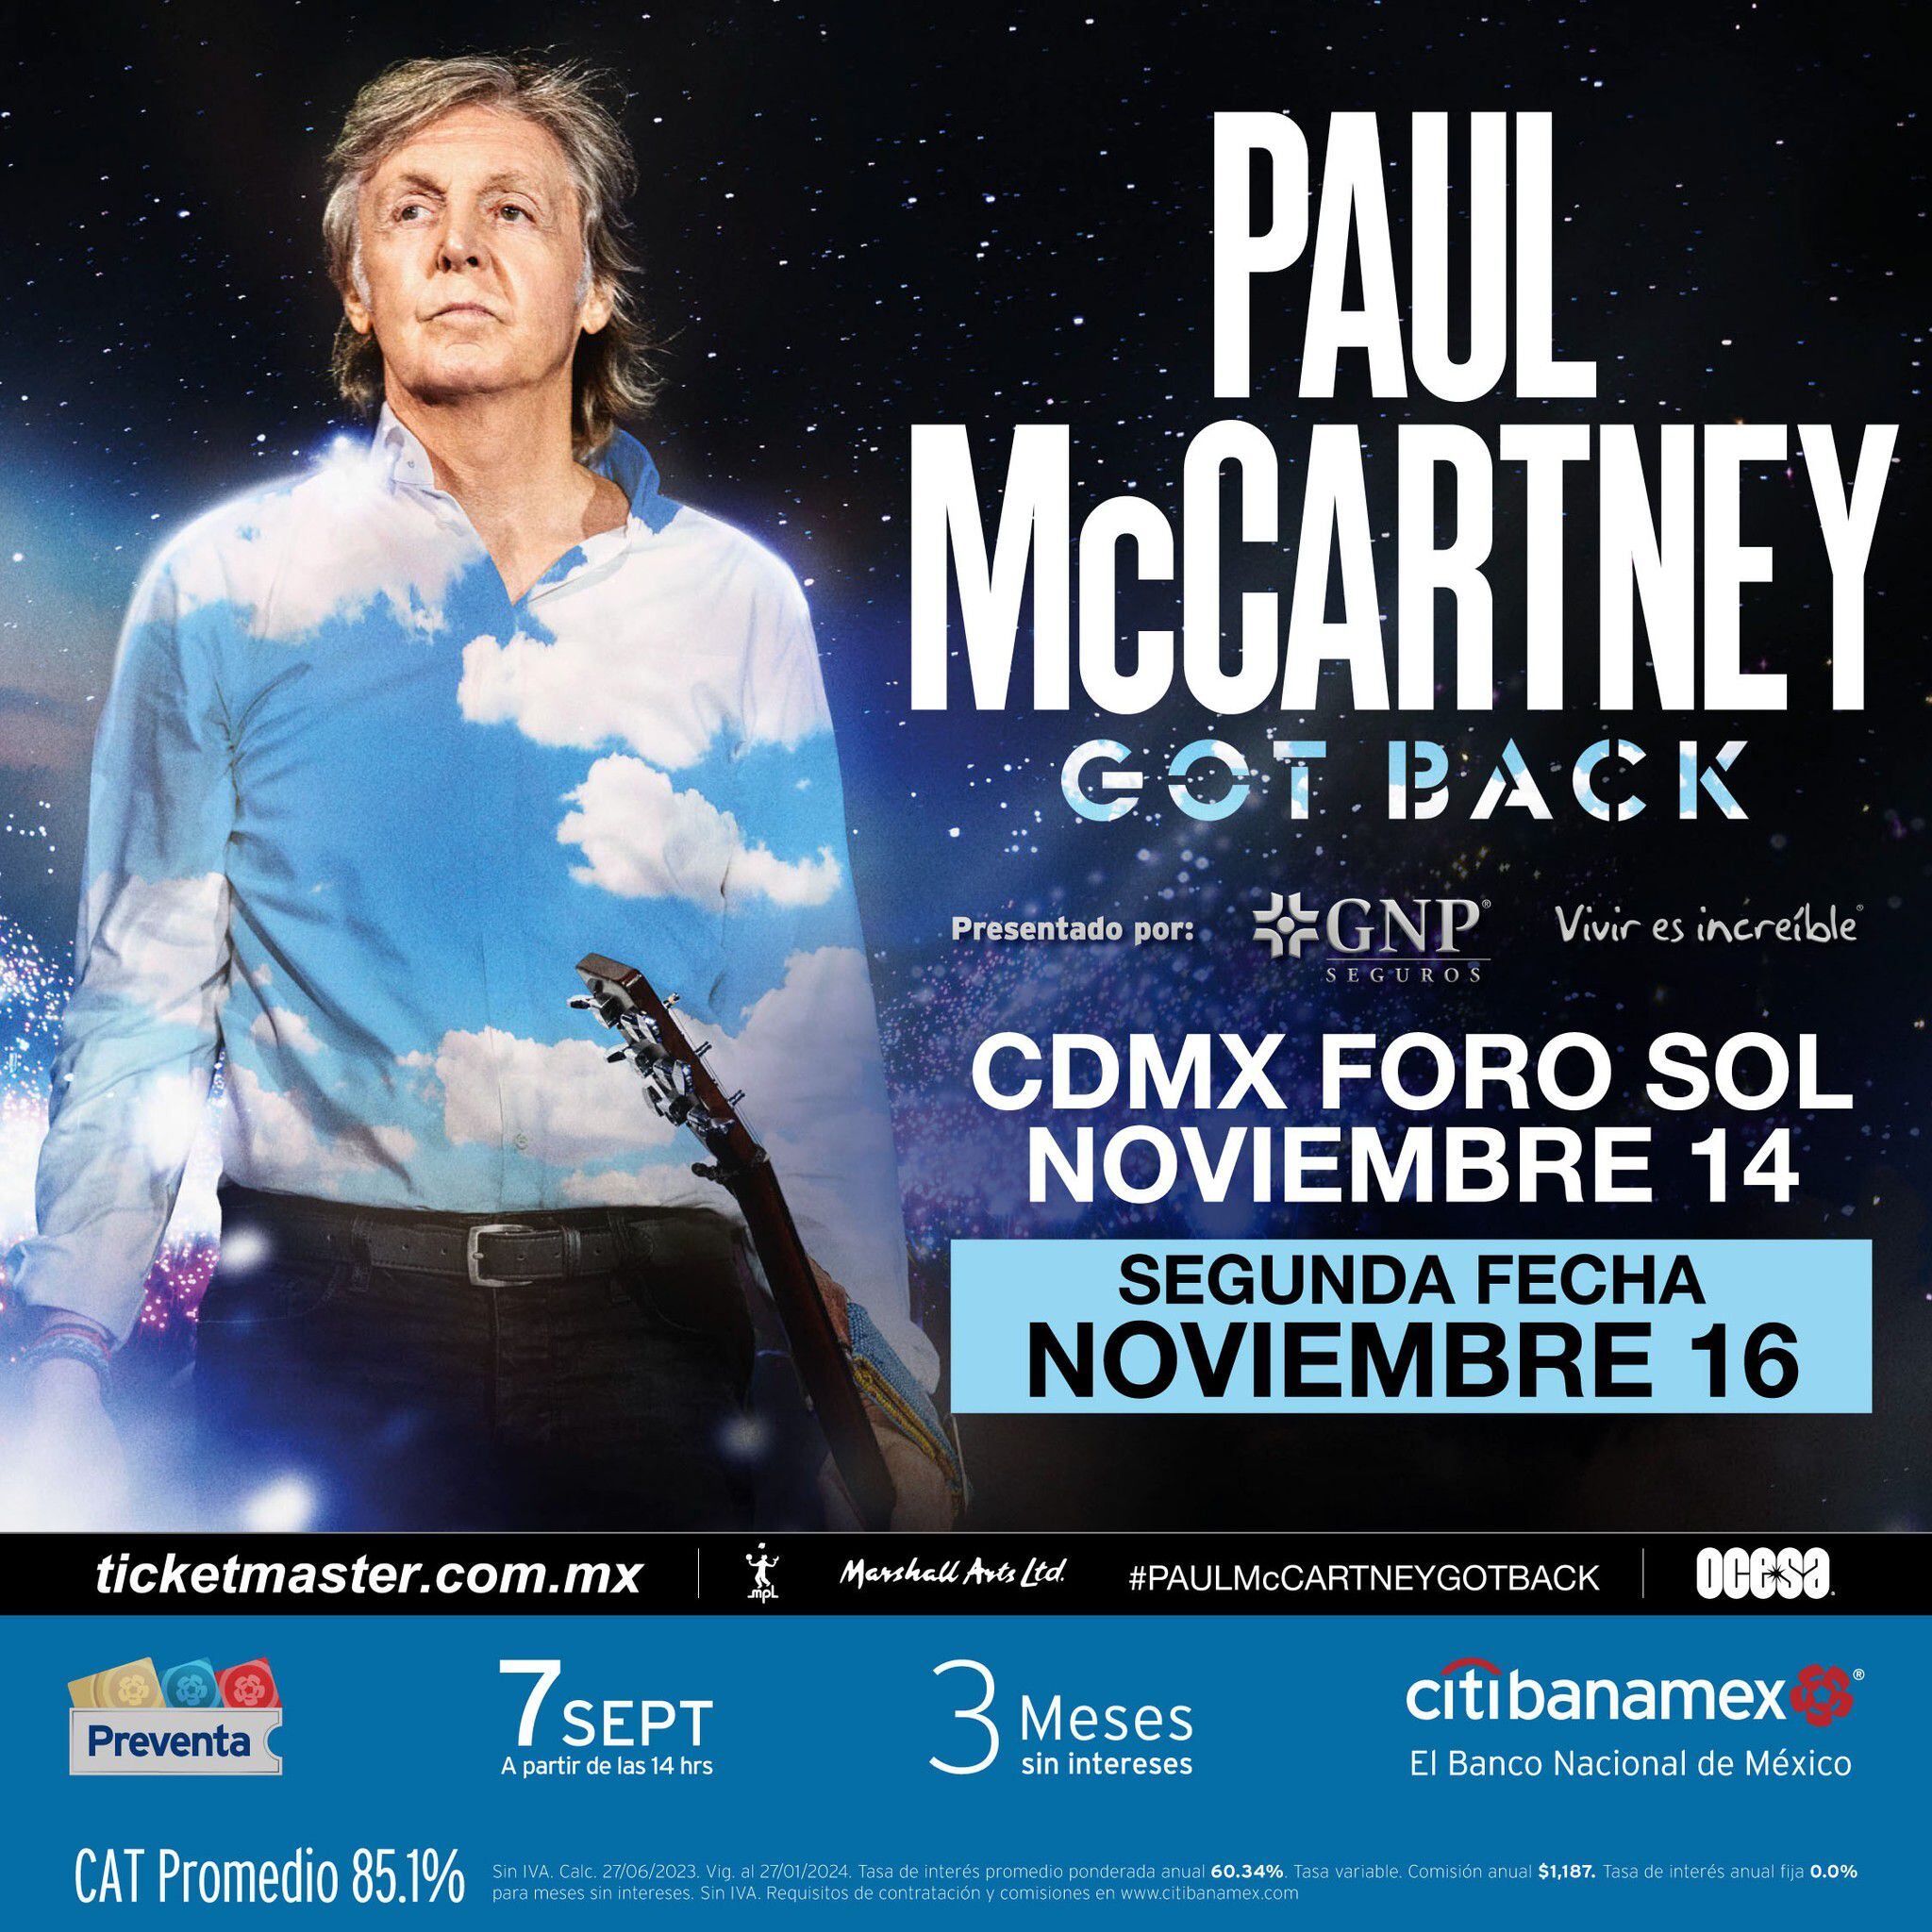 Paul McCartney, el ex Beatle, deleitará a sus fans mexicanos con dos emocionantes conciertos en noviembre (Ocesa)